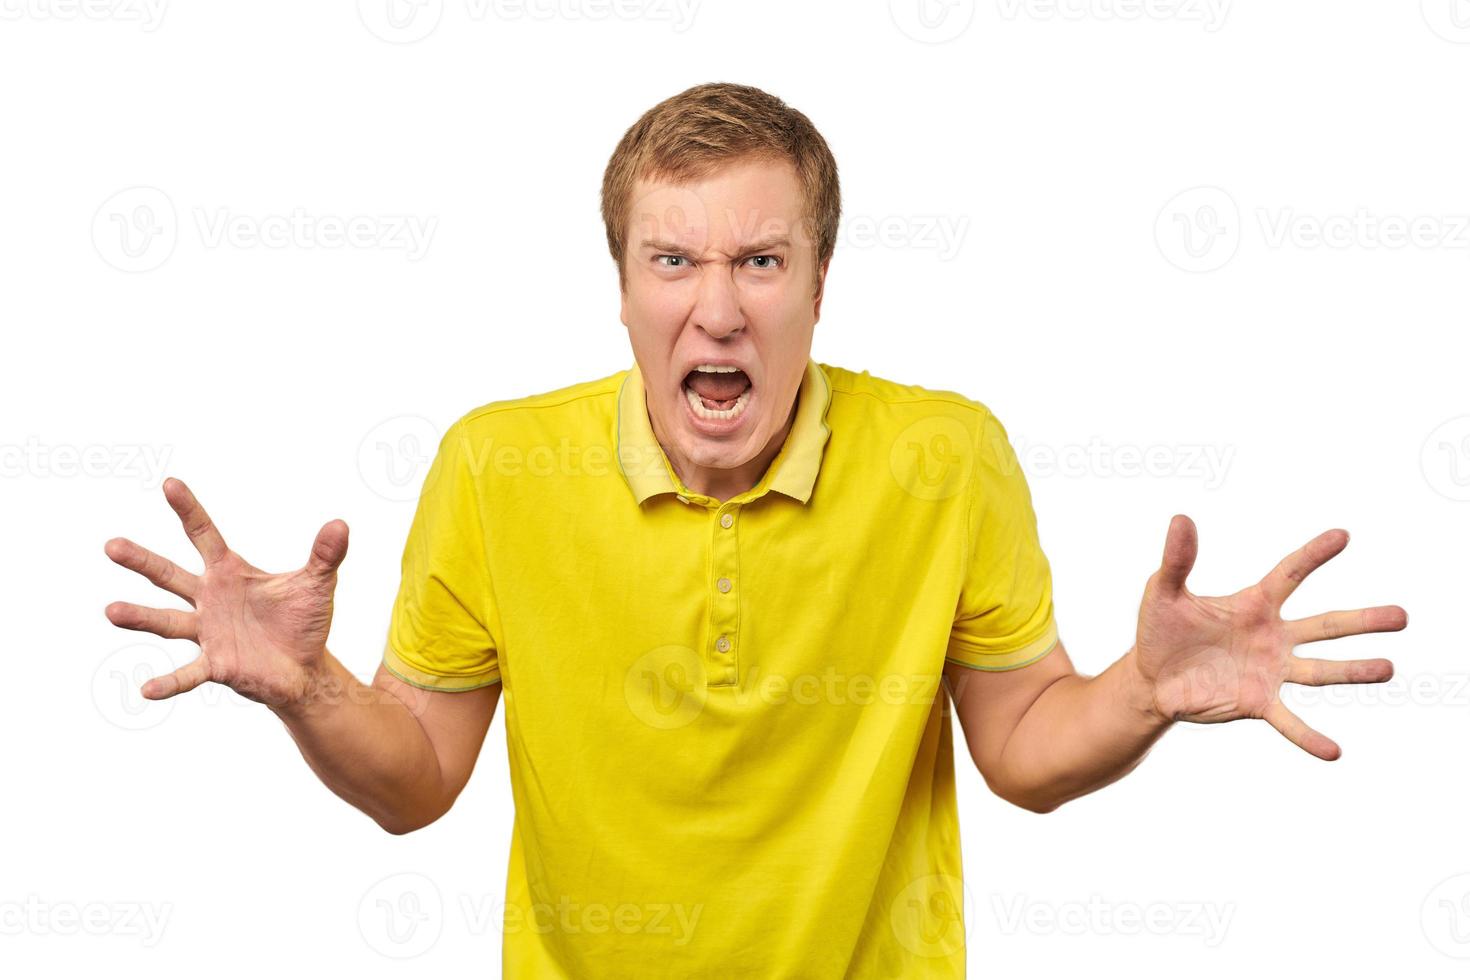 un joven enojado con una camiseta amarilla extendió las manos y gritó aislado de fondo blanco foto